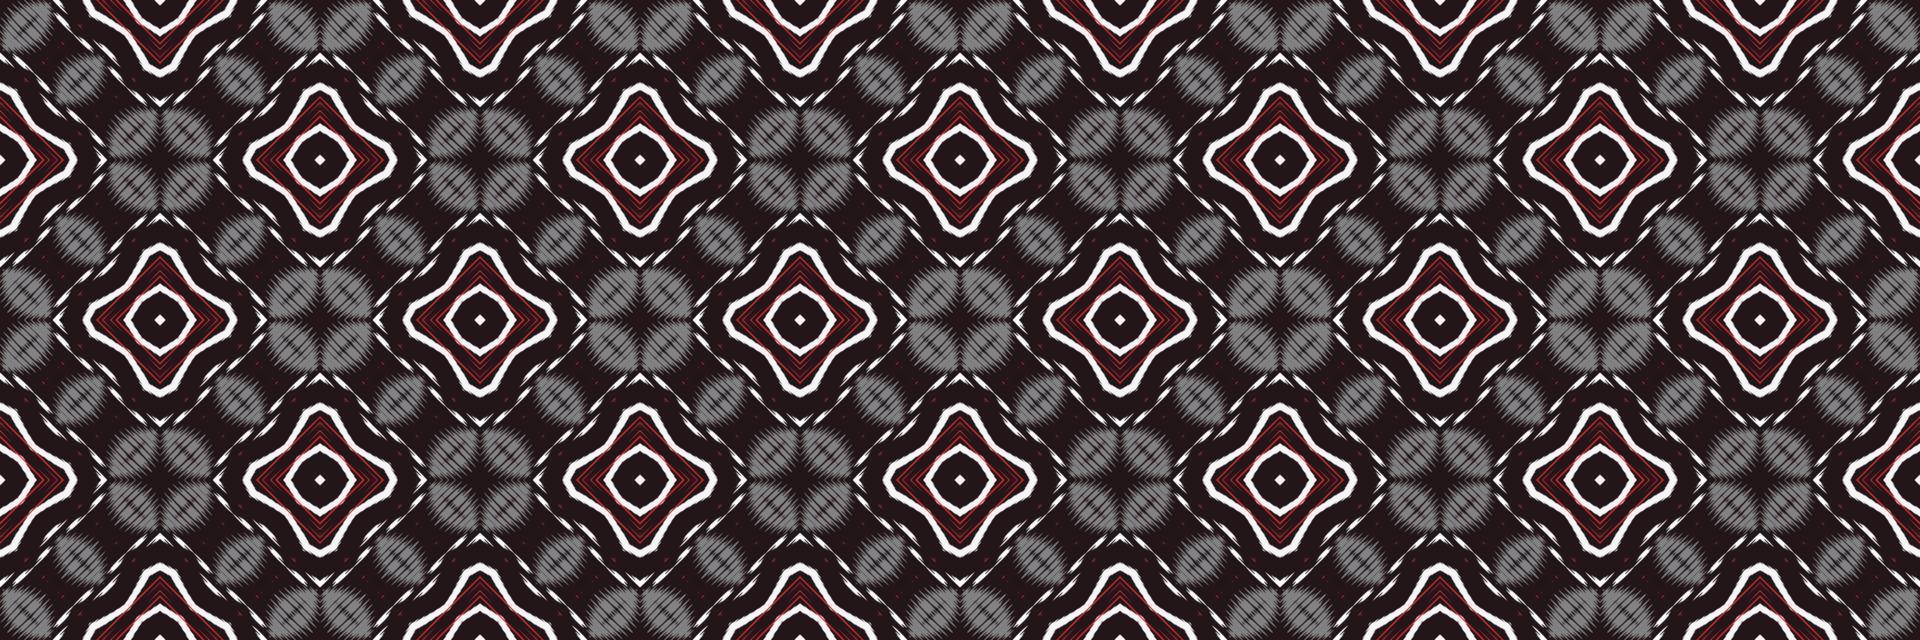 ethnique ikat triangle batik textile modèle sans couture conception de vecteur numérique pour impression saree kurti borneo tissu frontière brosse symboles swatches designer